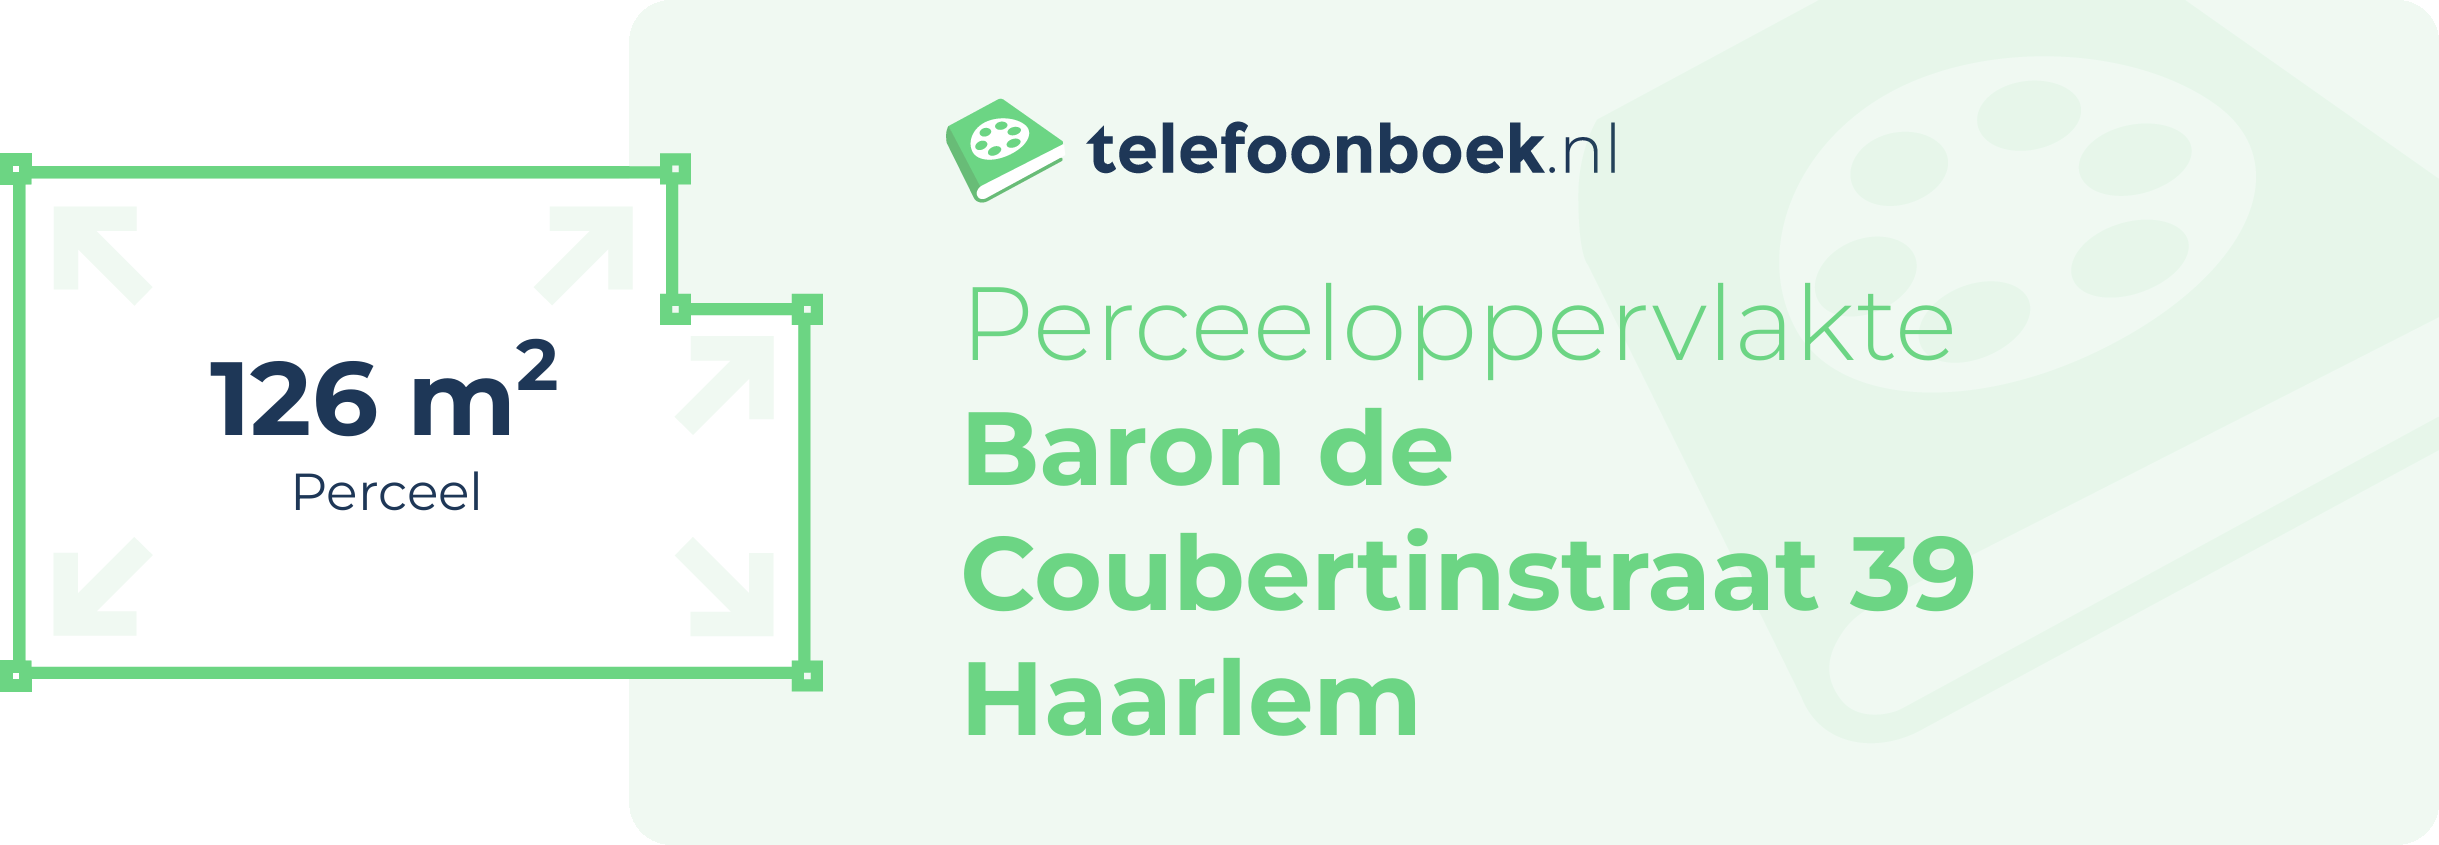 Perceeloppervlakte Baron De Coubertinstraat 39 Haarlem